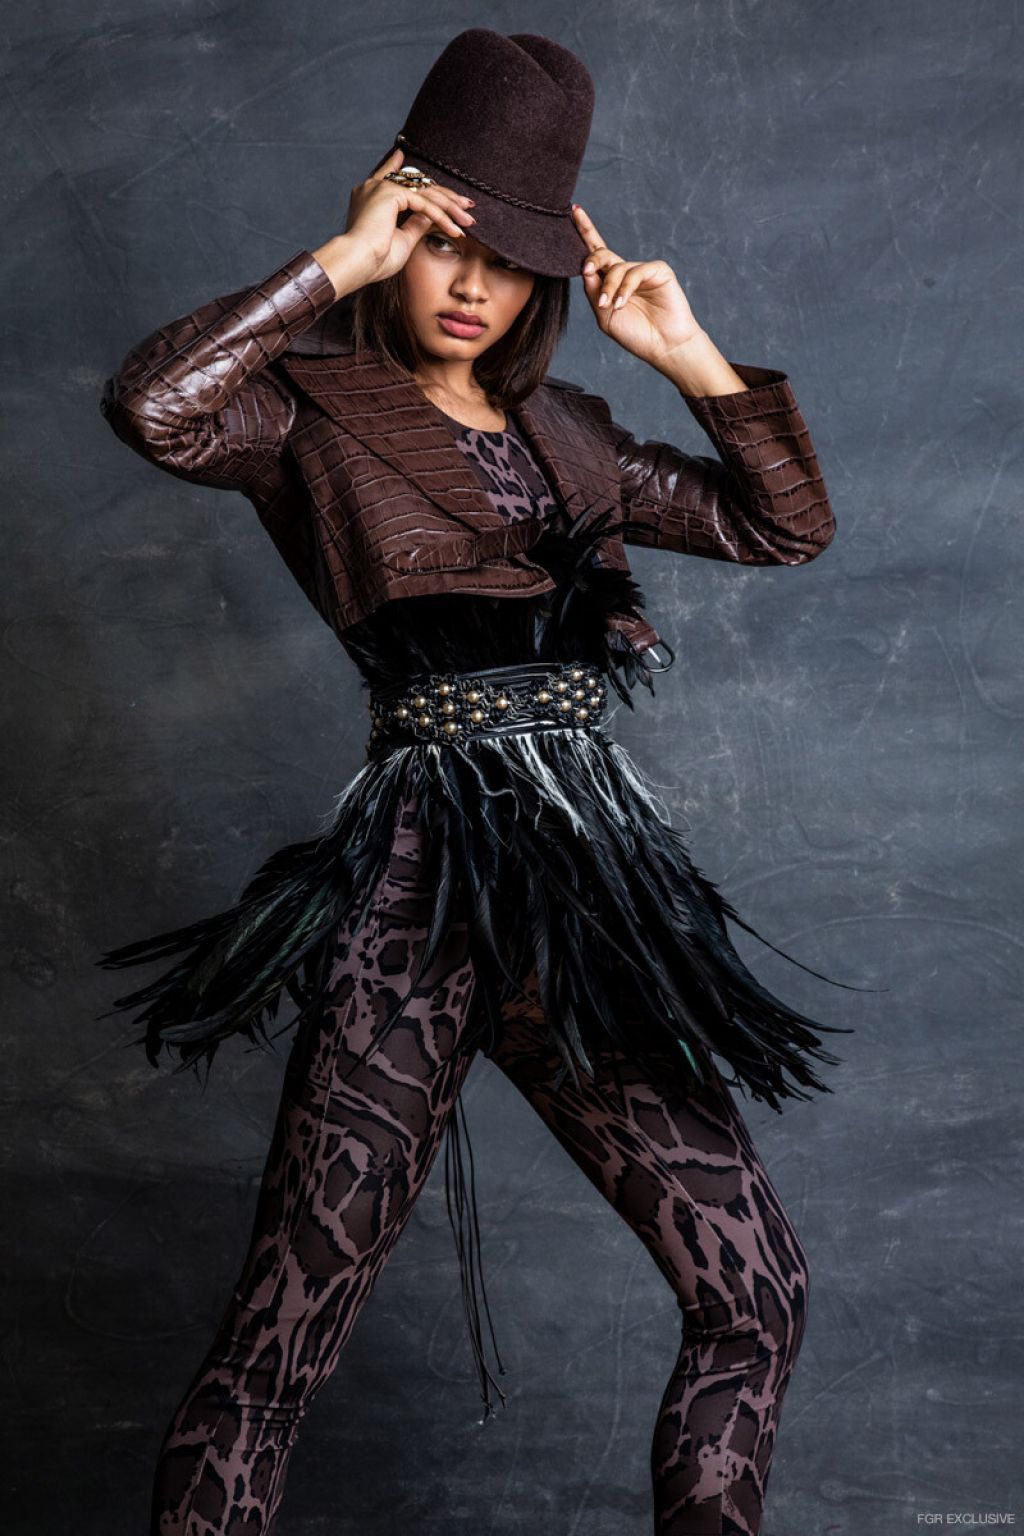 Danielle Herrington - "Glamorous" Photoshoot for Fashion ...
